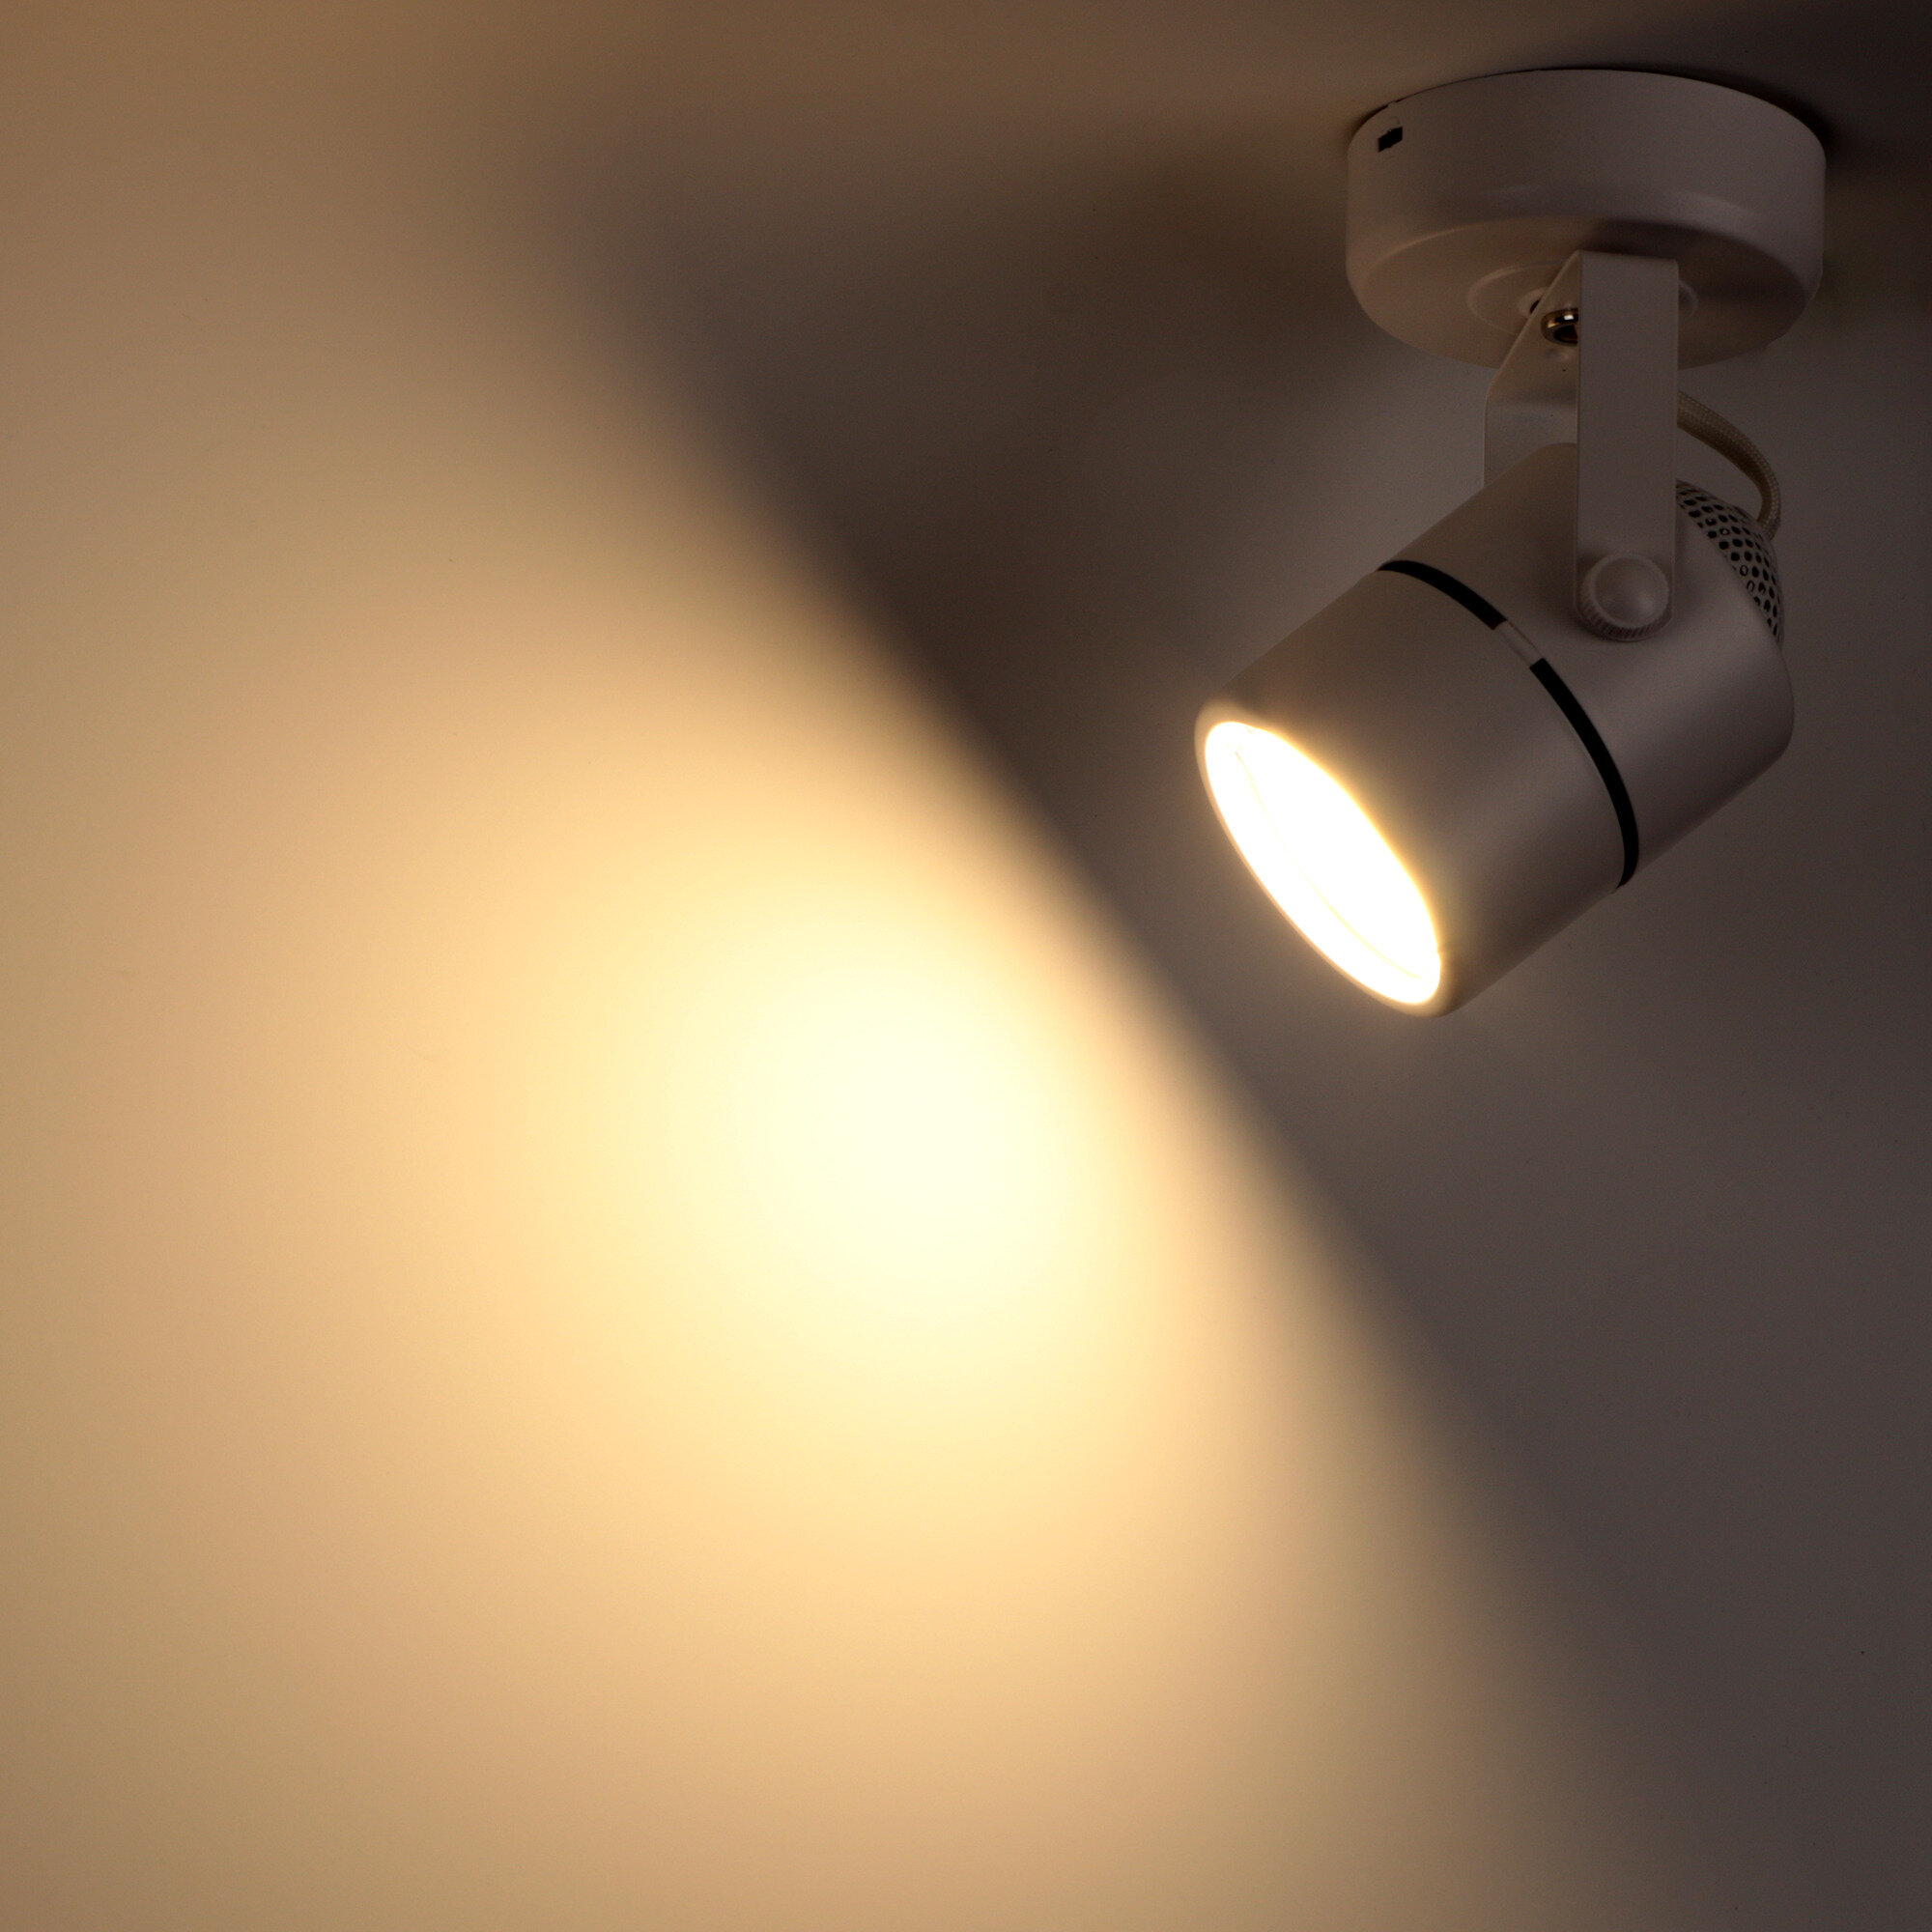 Светильник накладной Arton, поворотный, цилиндр, 60х90х140мм, GU10, металл, белый, настенно-потолочный светильник для гостиной, кухни, Ritter 59962 3